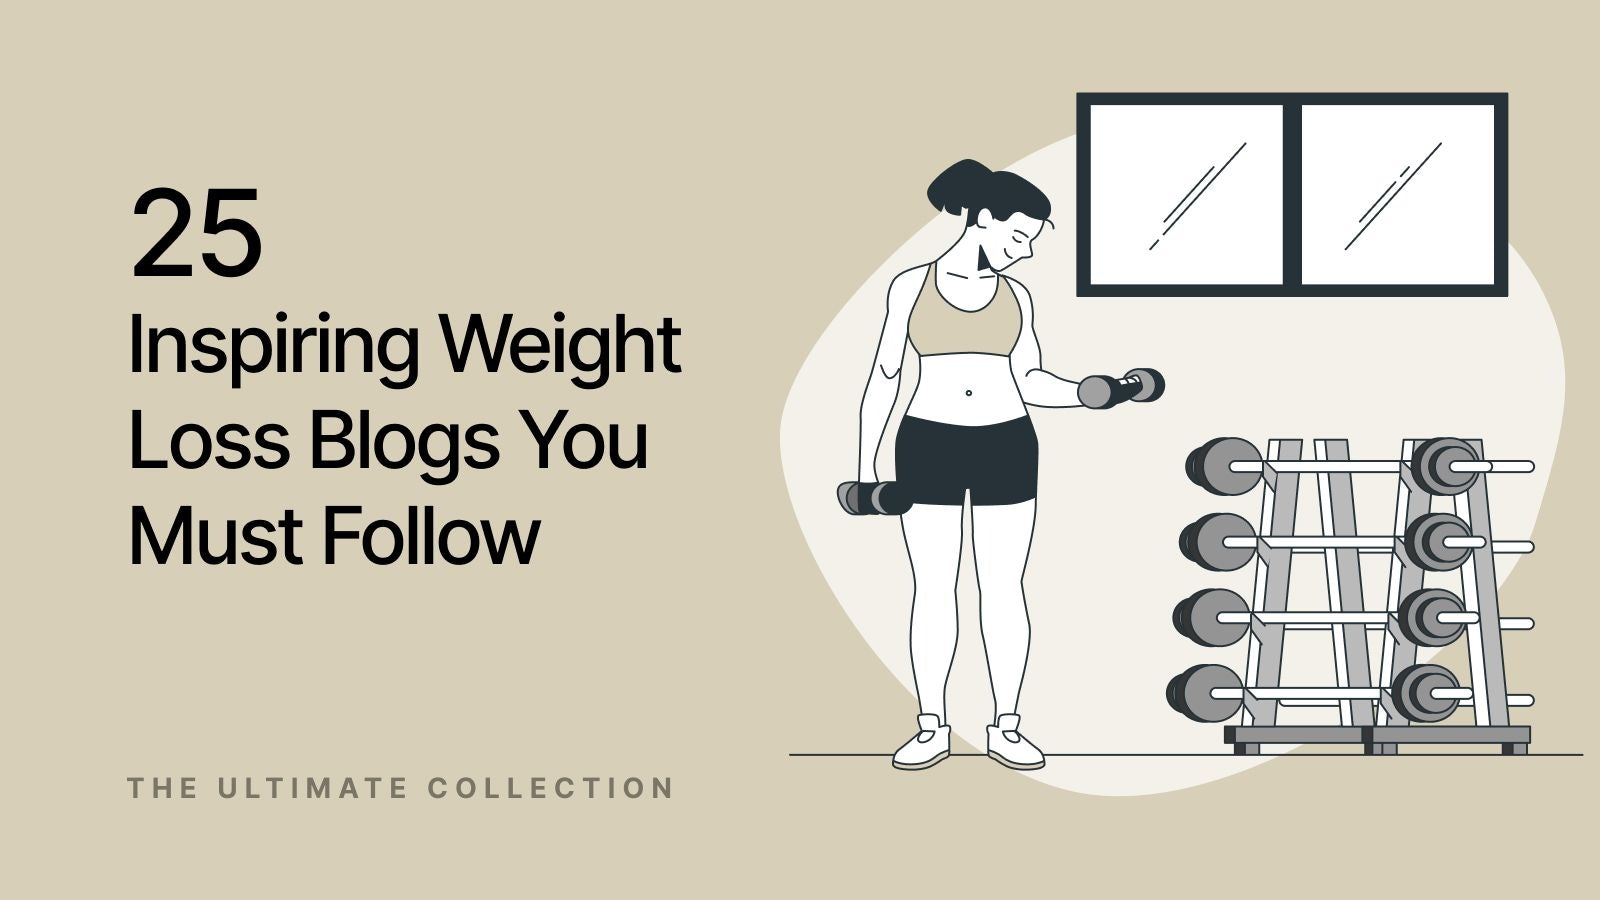 Weight management blogs